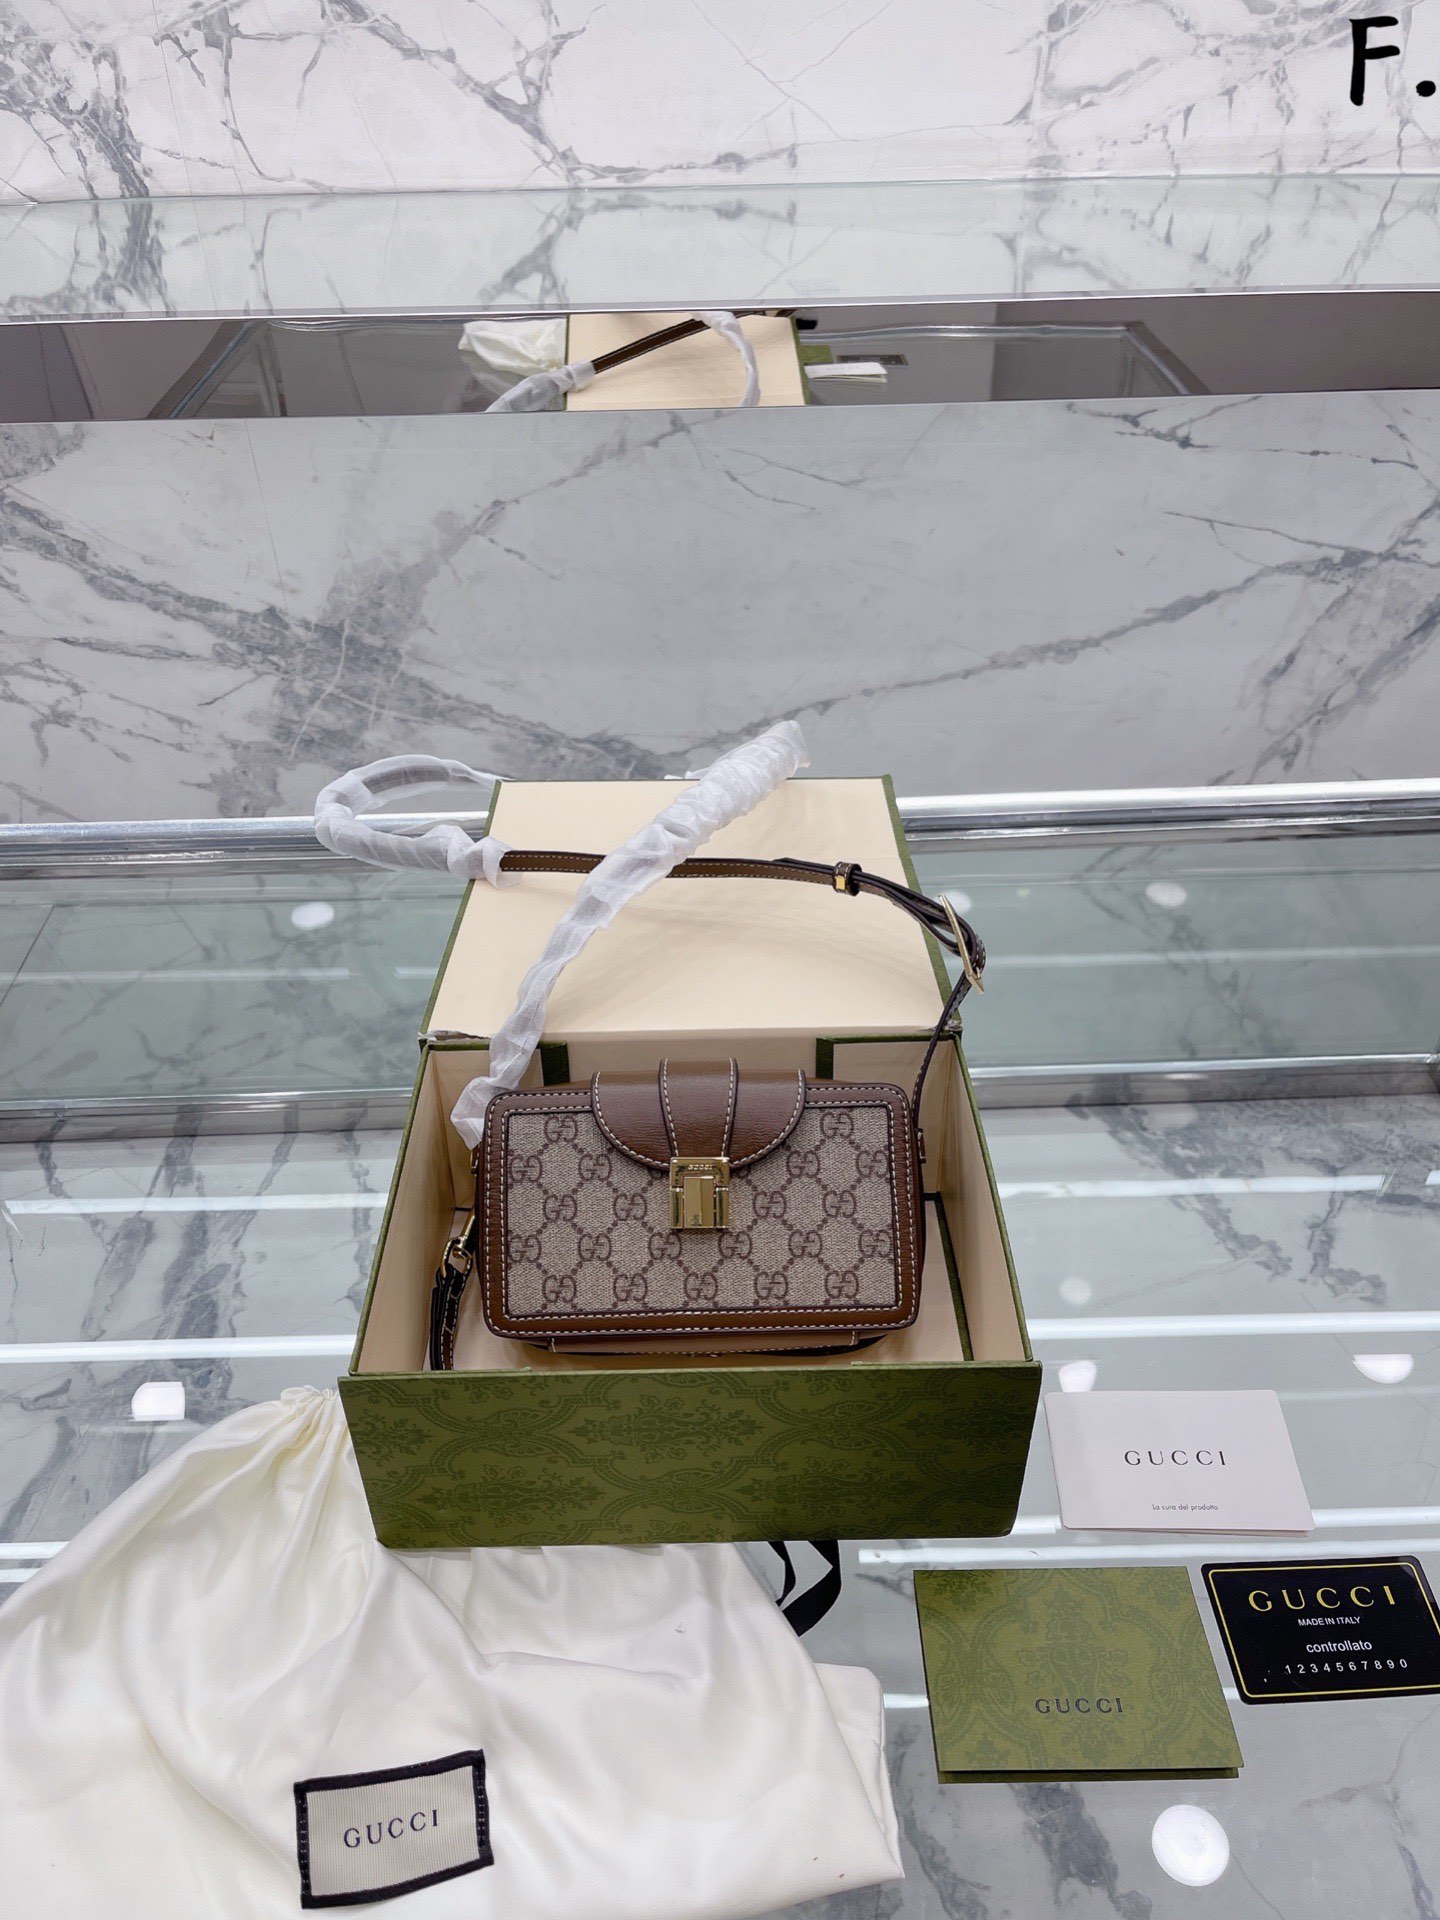 Gucci Handbags Mini Box GUCCI 1955 Derivative Series 